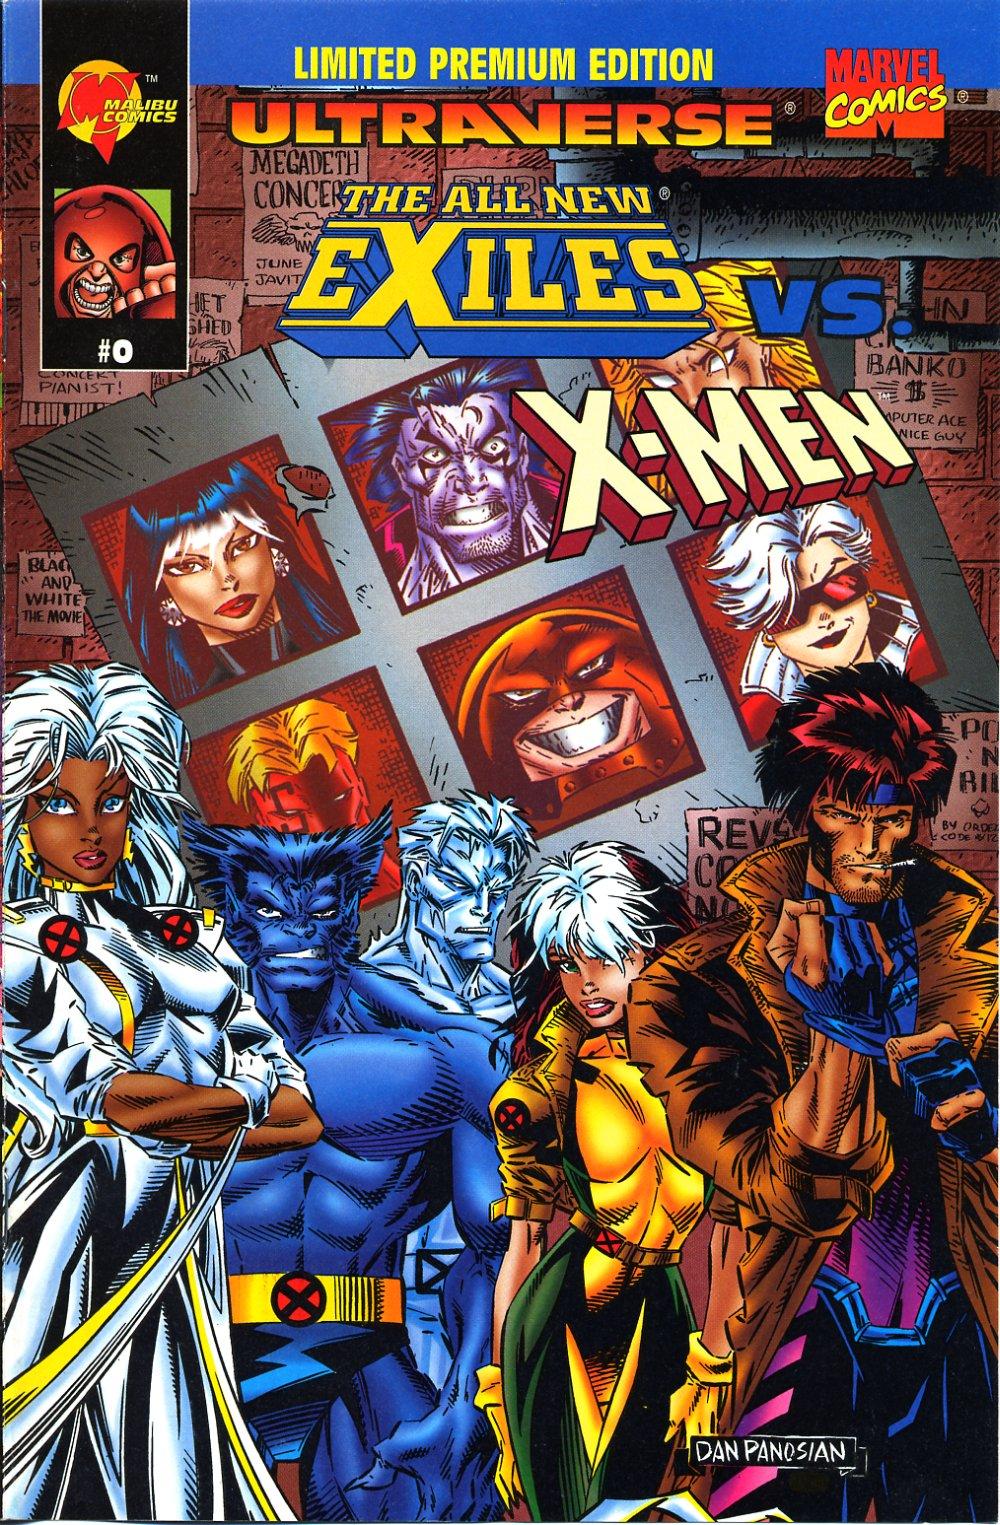 All New Exiles Vs. X-Men Vol. 1 #0